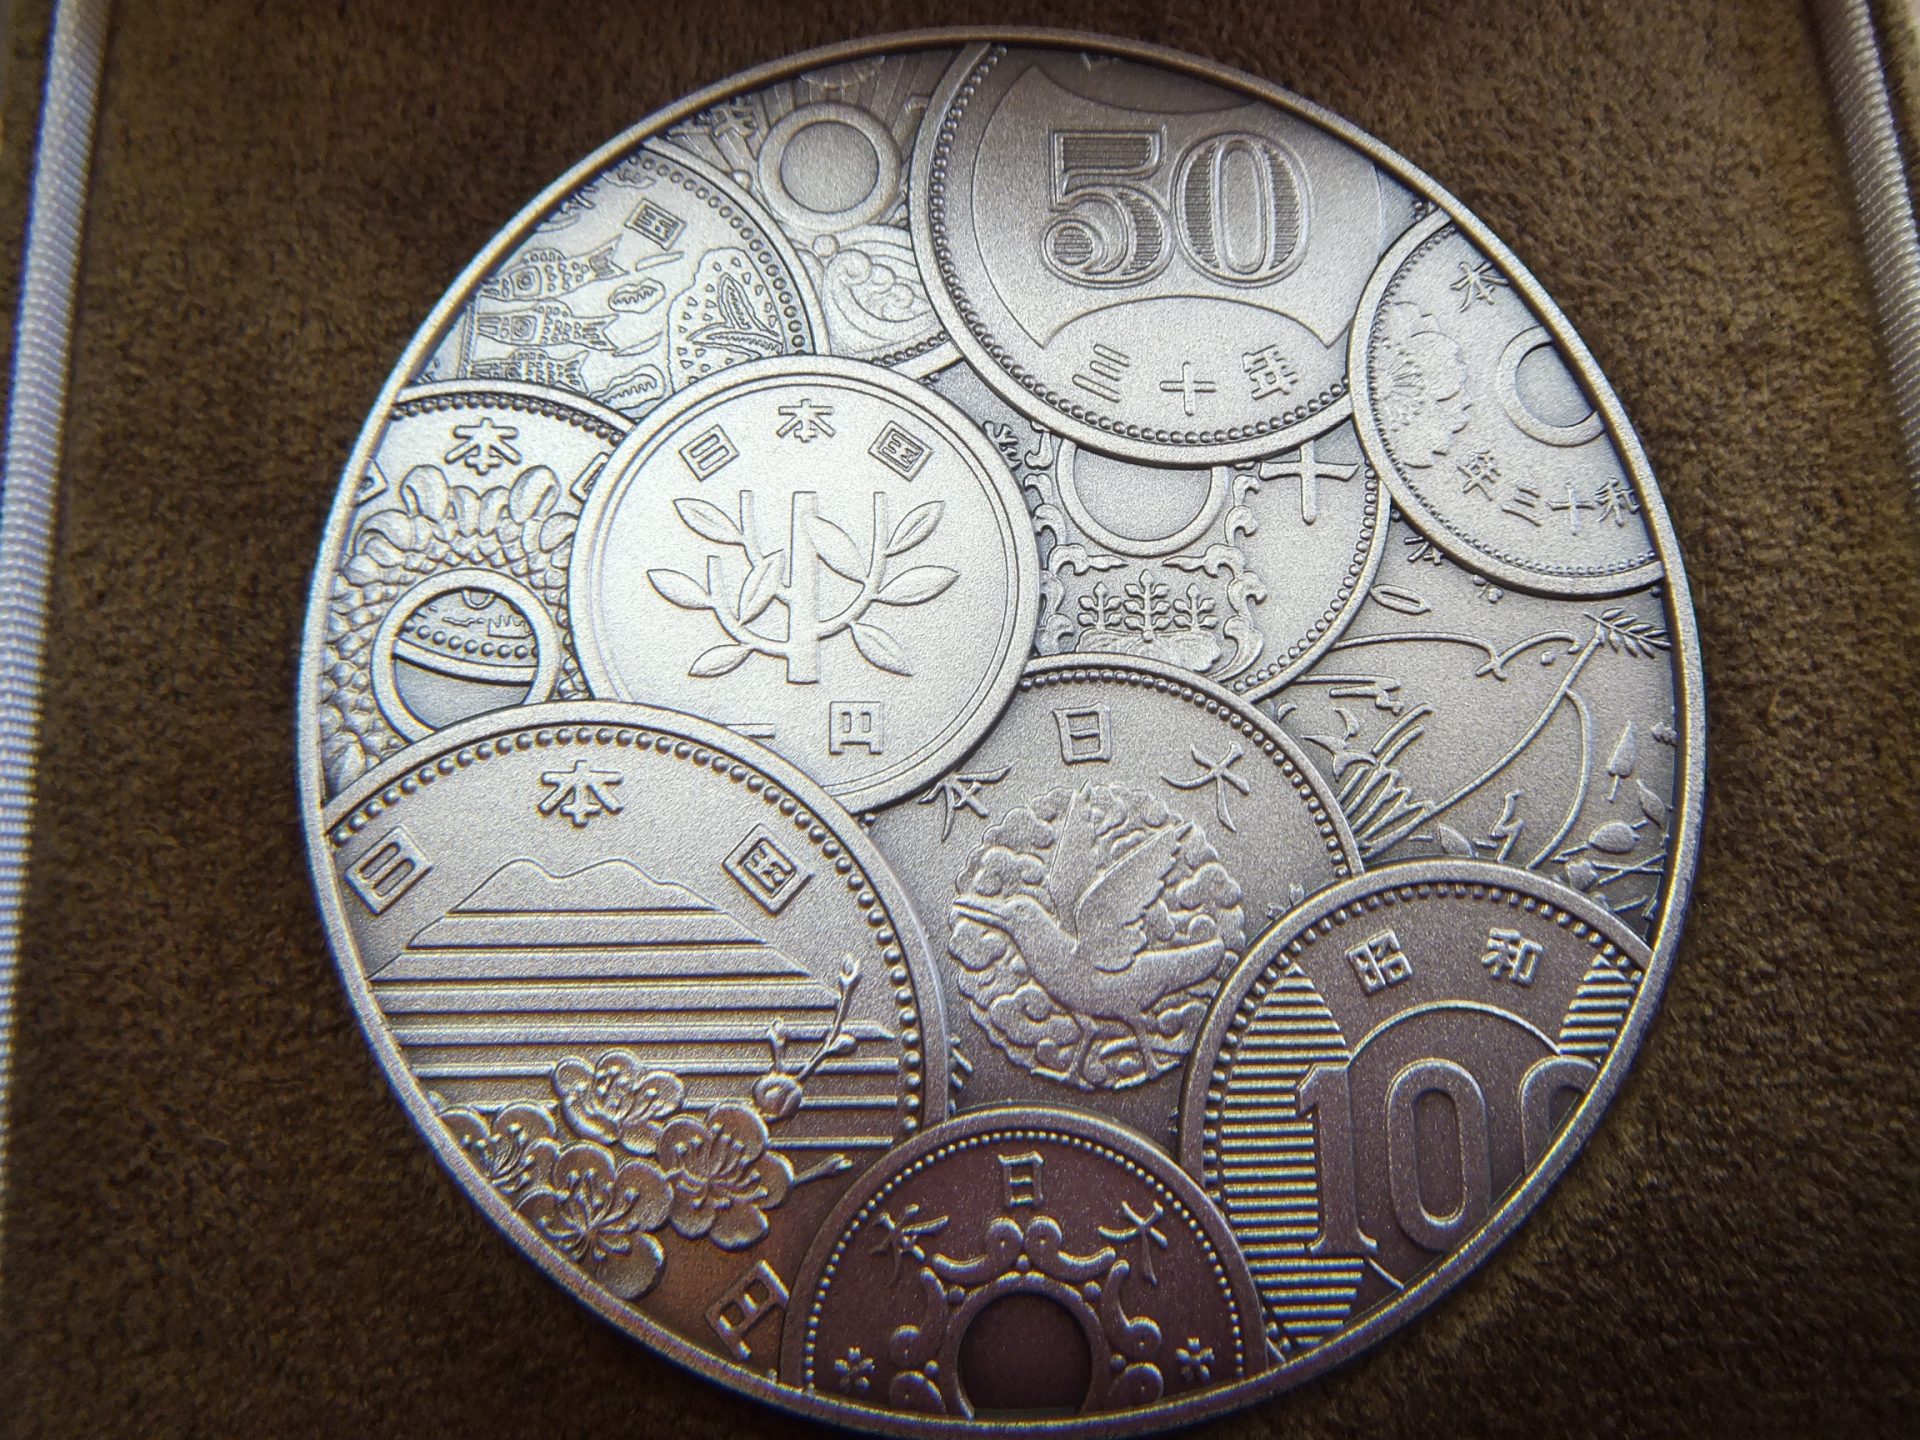 初の貨幣図案公募100年記念メダル